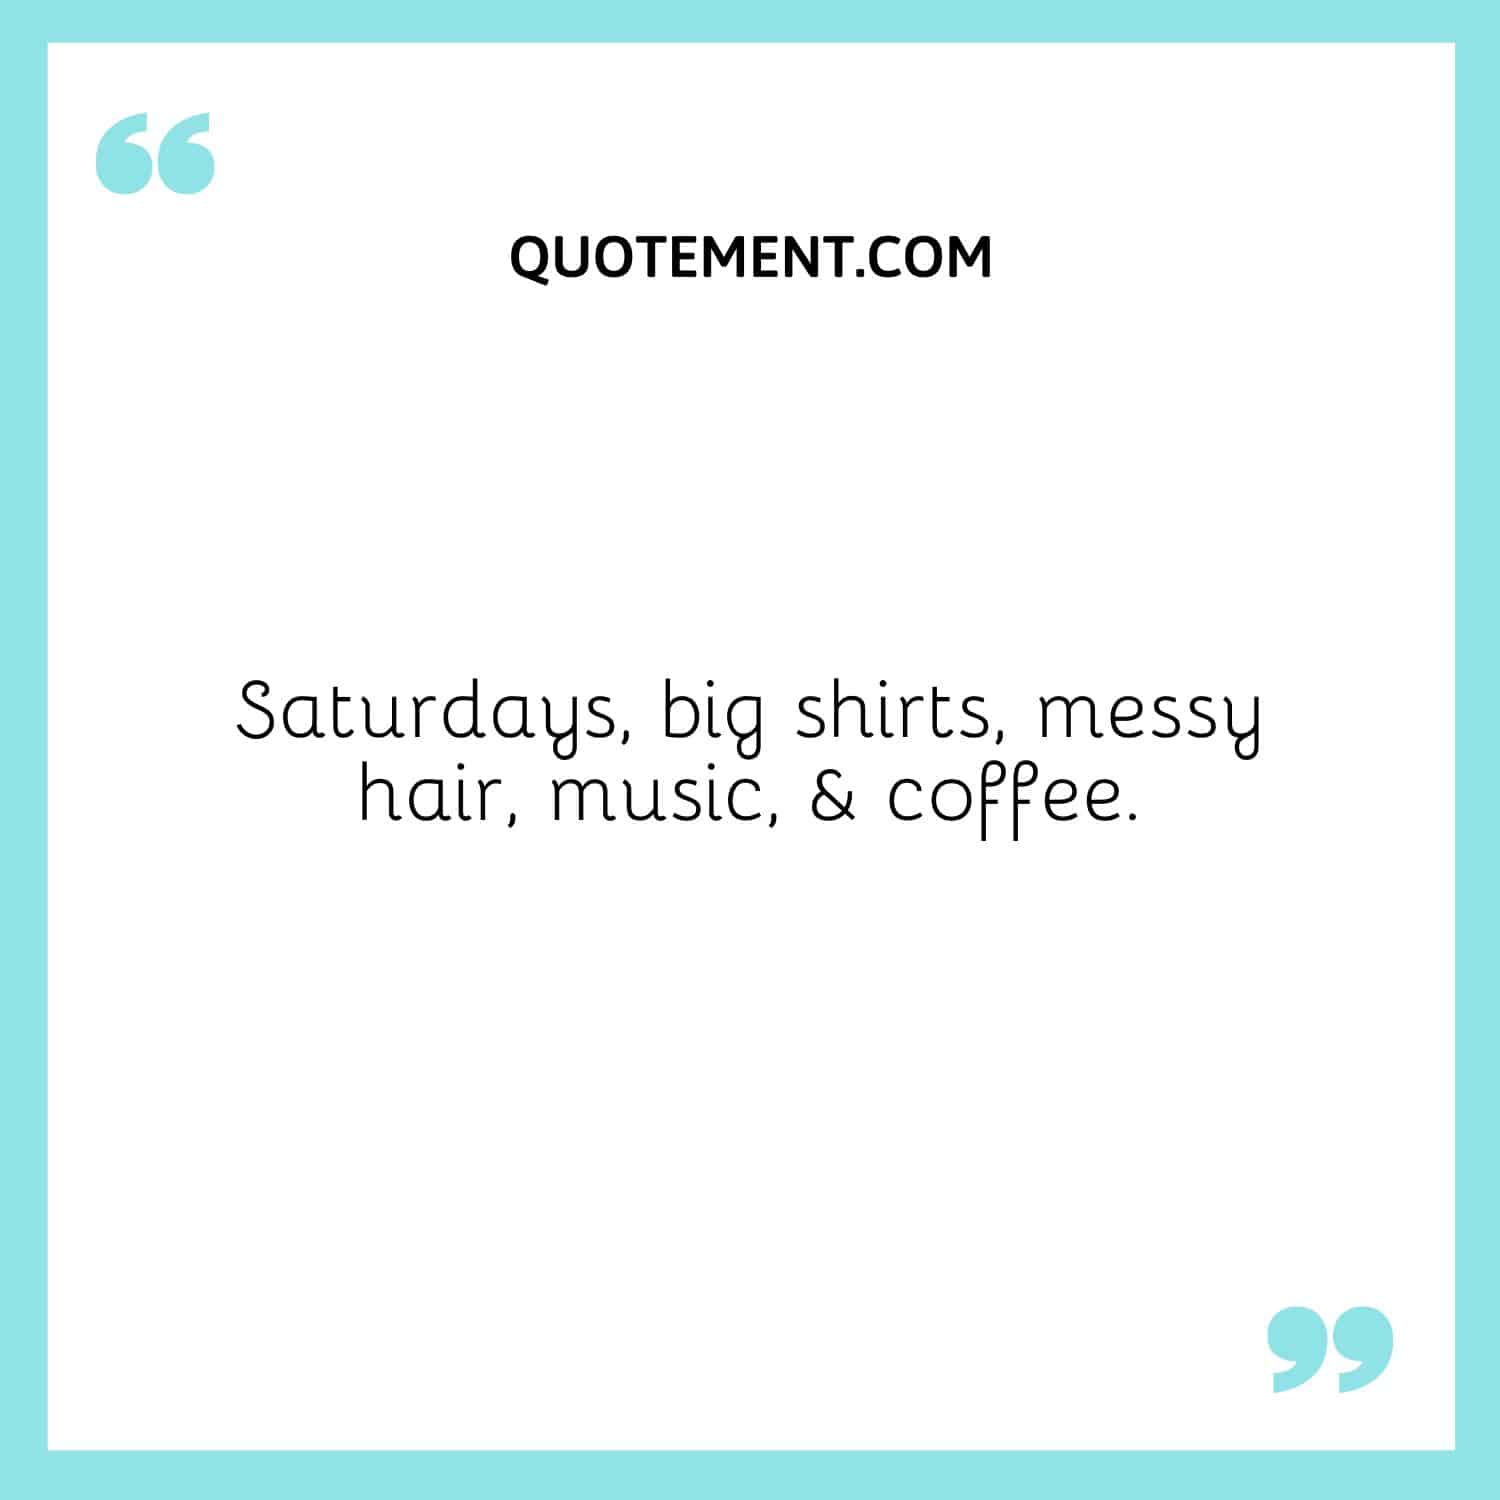 Saturdays, big shirts, messy hair, music, & coffee